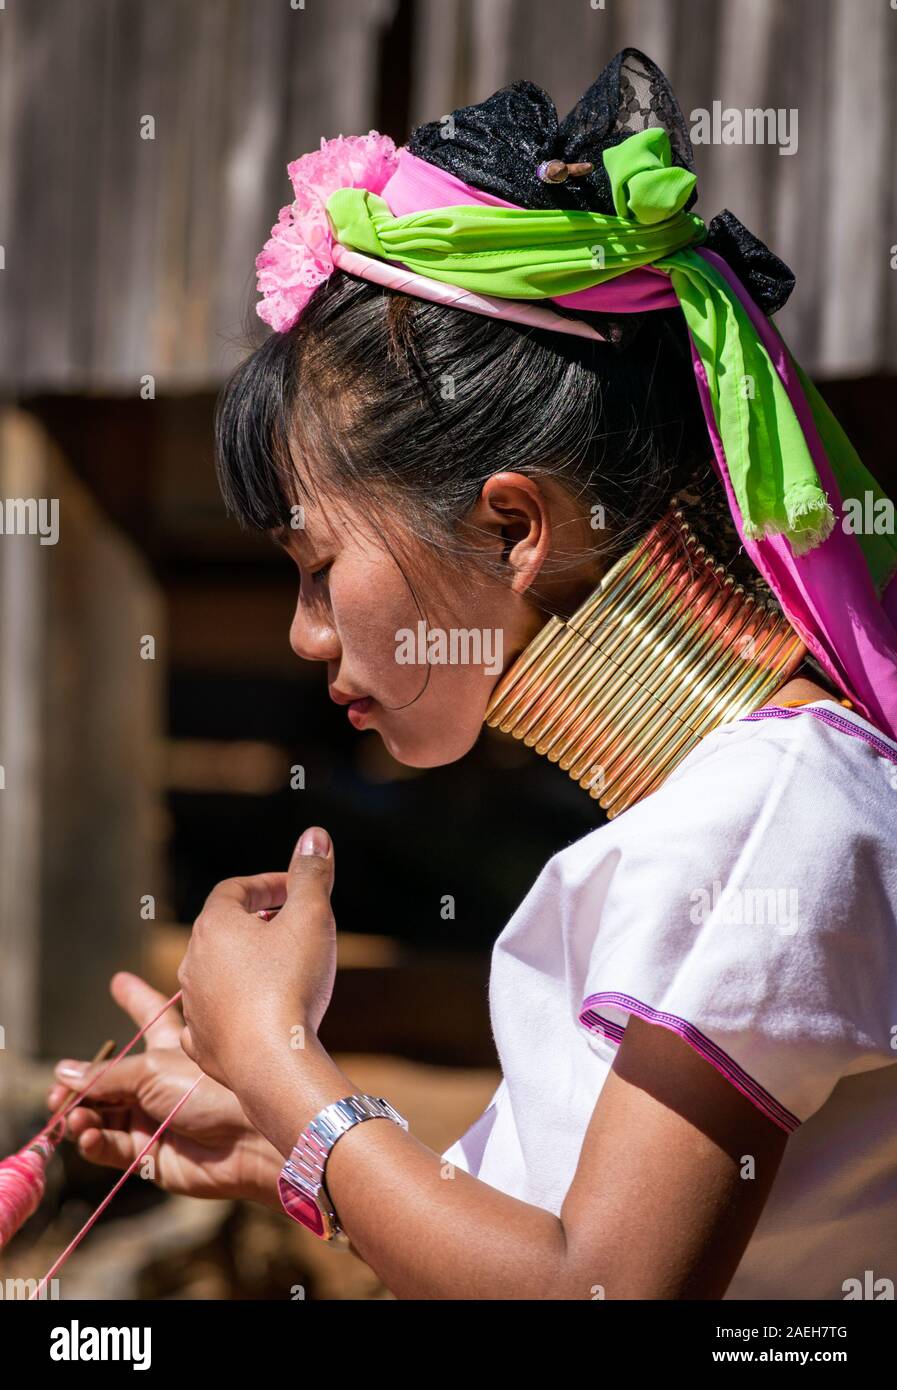 Portrait d'une jeune femme de la tribu Kayan portant tenue traditionnelle (et d'une montre moderne) et collier en laiton. Pet, Pan, le Myanmar Loikaw. Banque D'Images